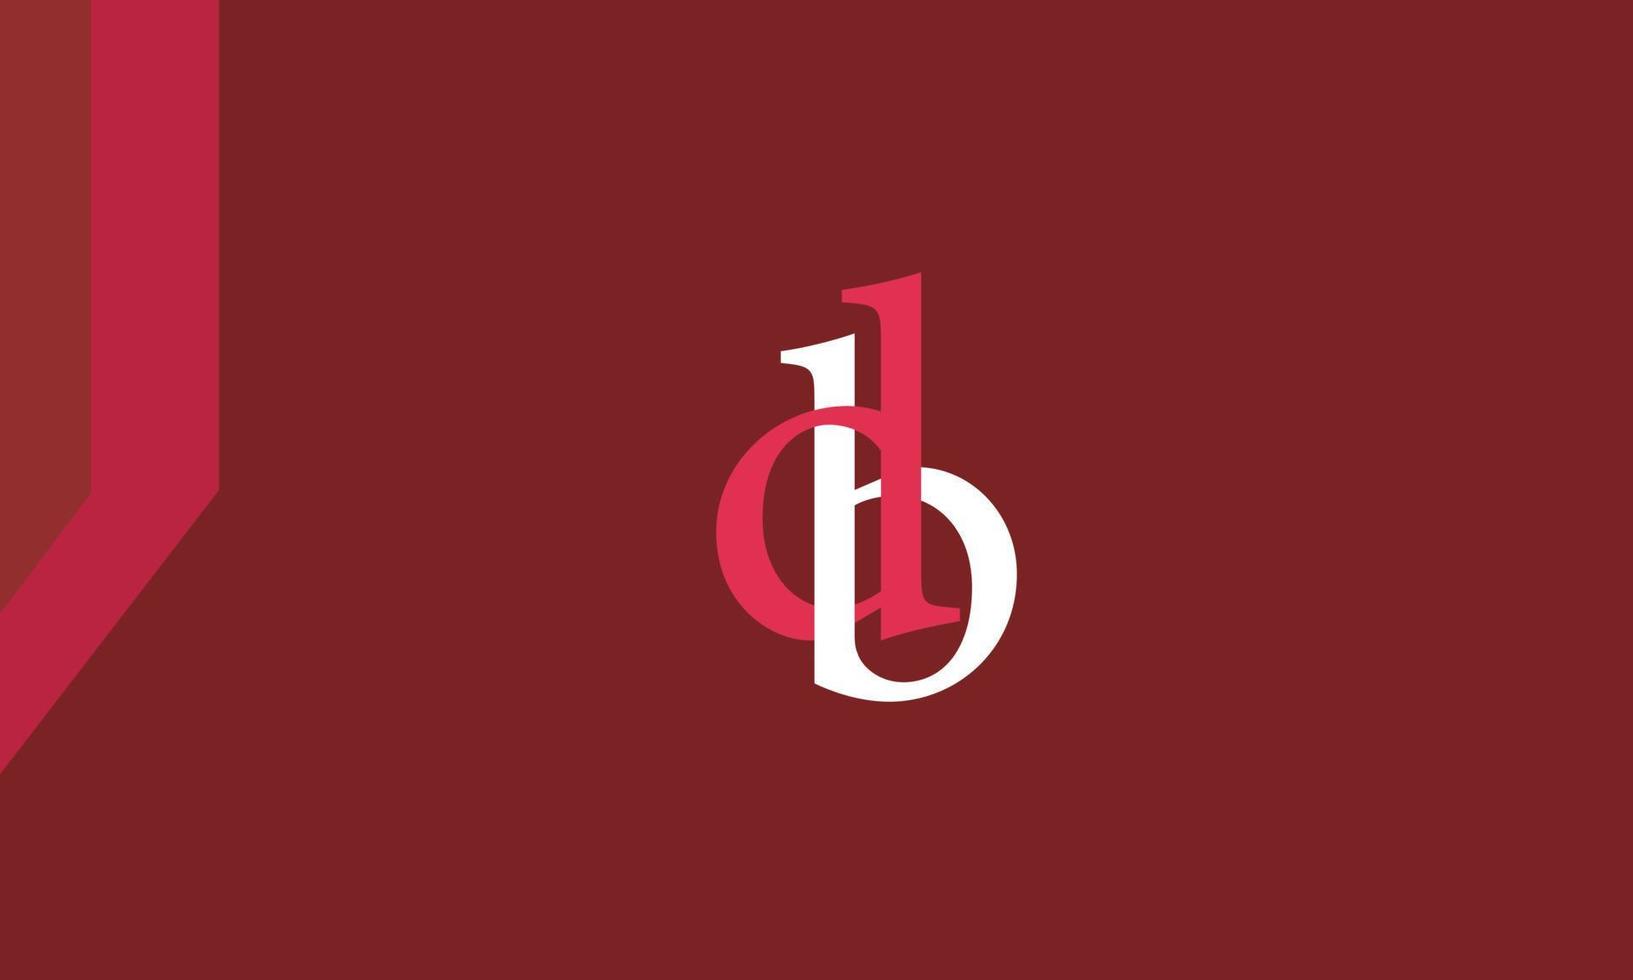 letras do alfabeto iniciais monograma logotipo db, bd, d e b vetor